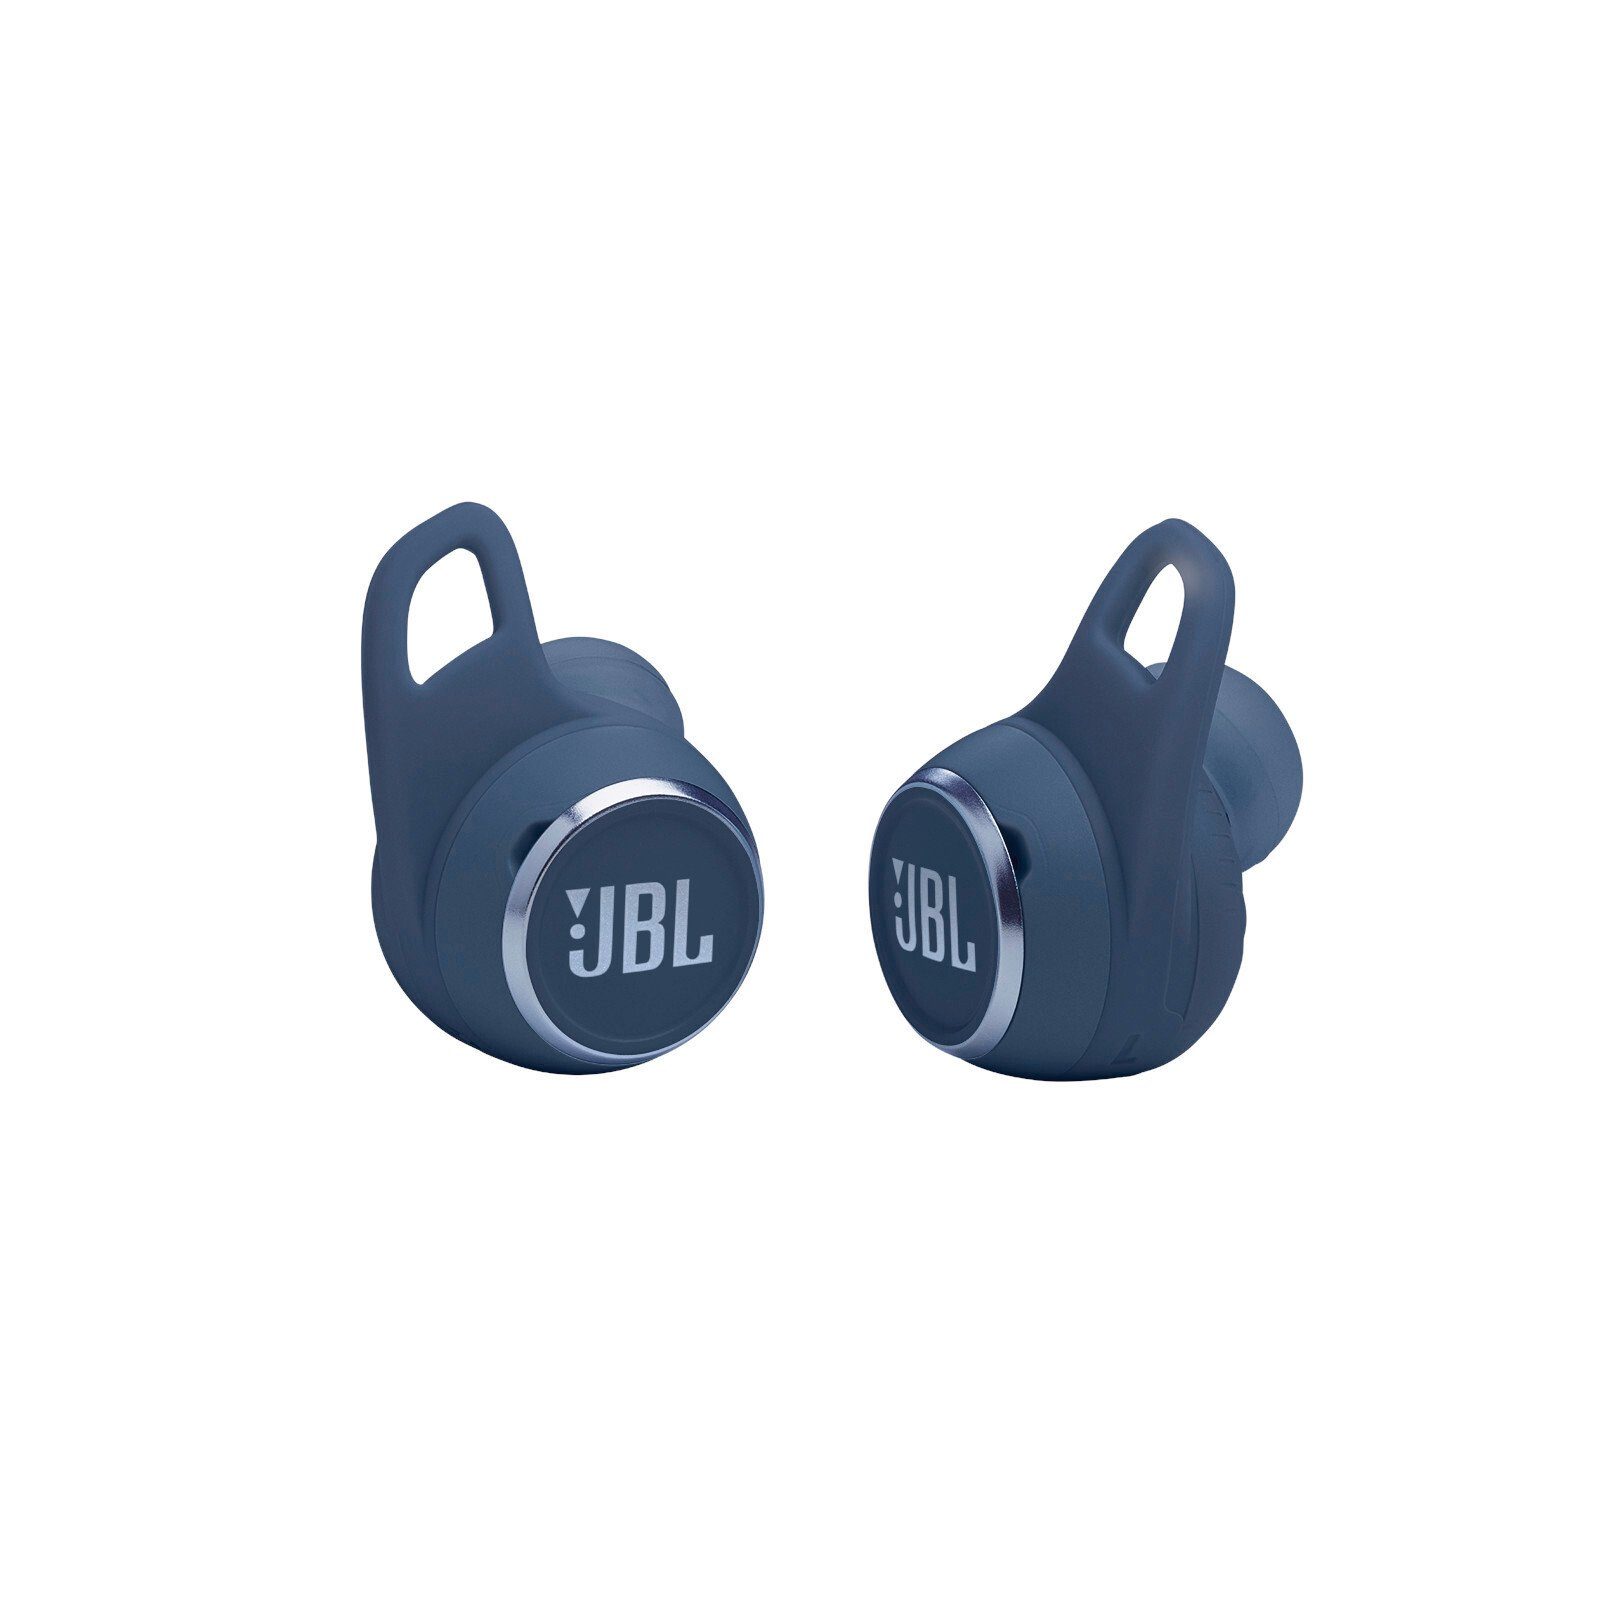 Aero wireless Blau Reflect JBL In-Ear-Kopfhörer